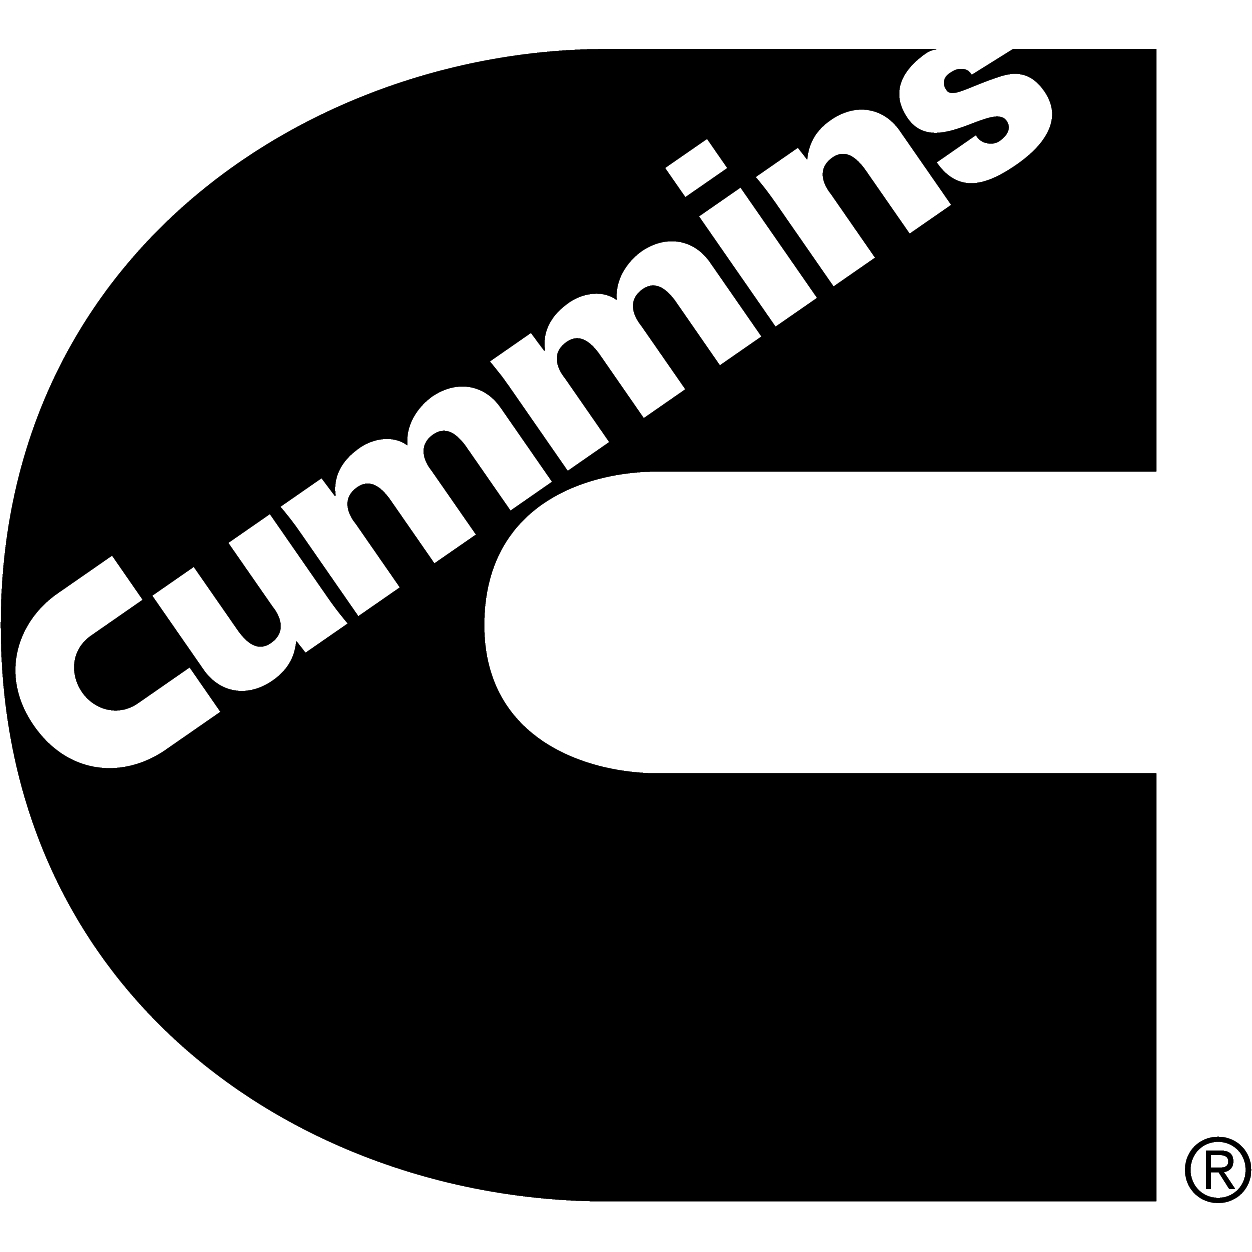 Cummins Sales and Service - Truck Repair & Service